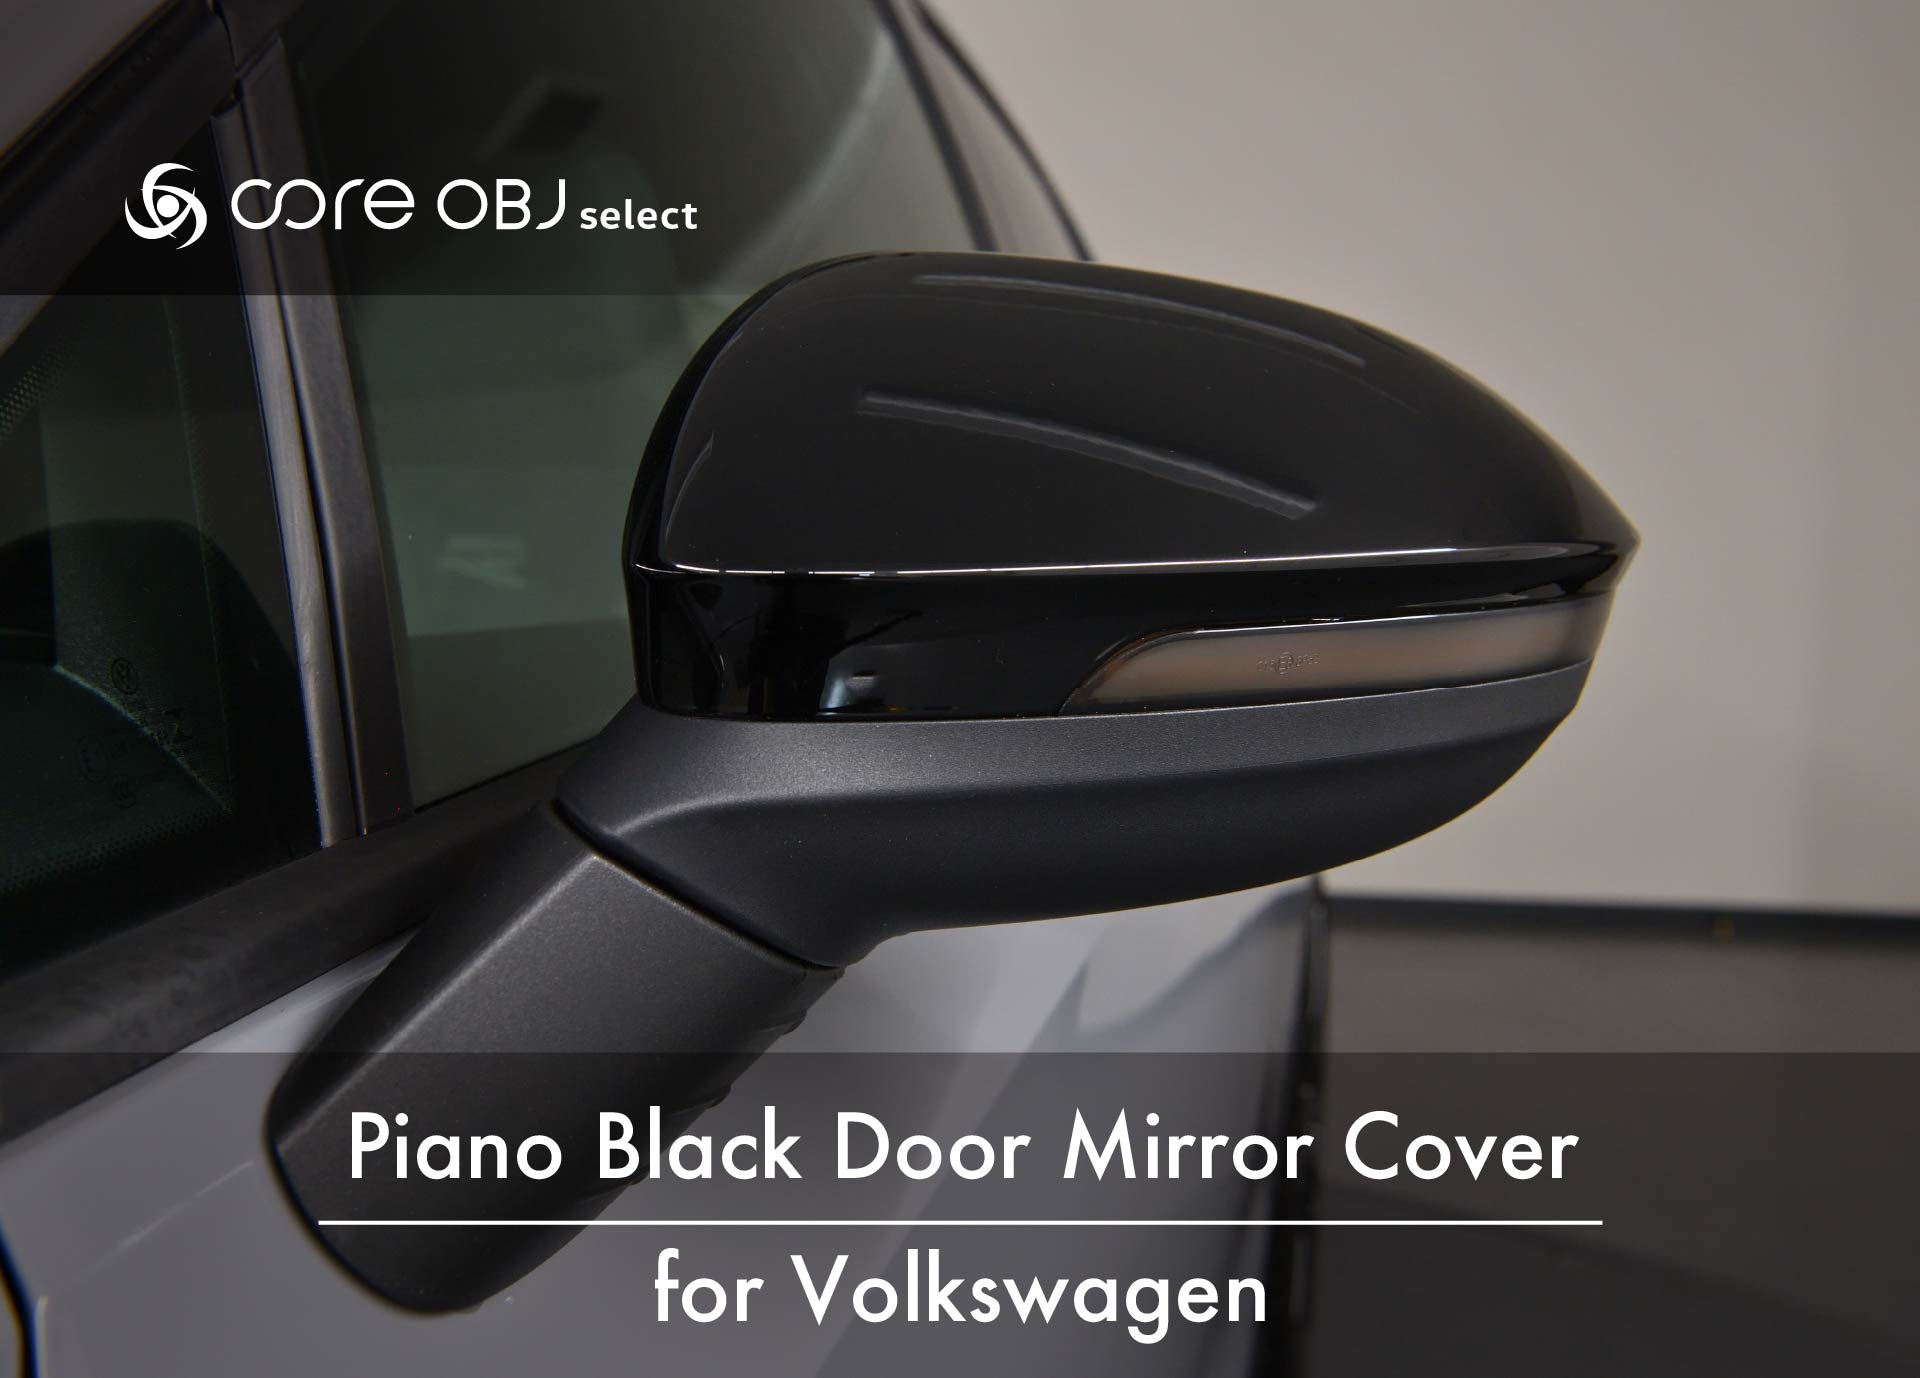 Piano Black Door Mirror Cover for Volkswagen / core obj select